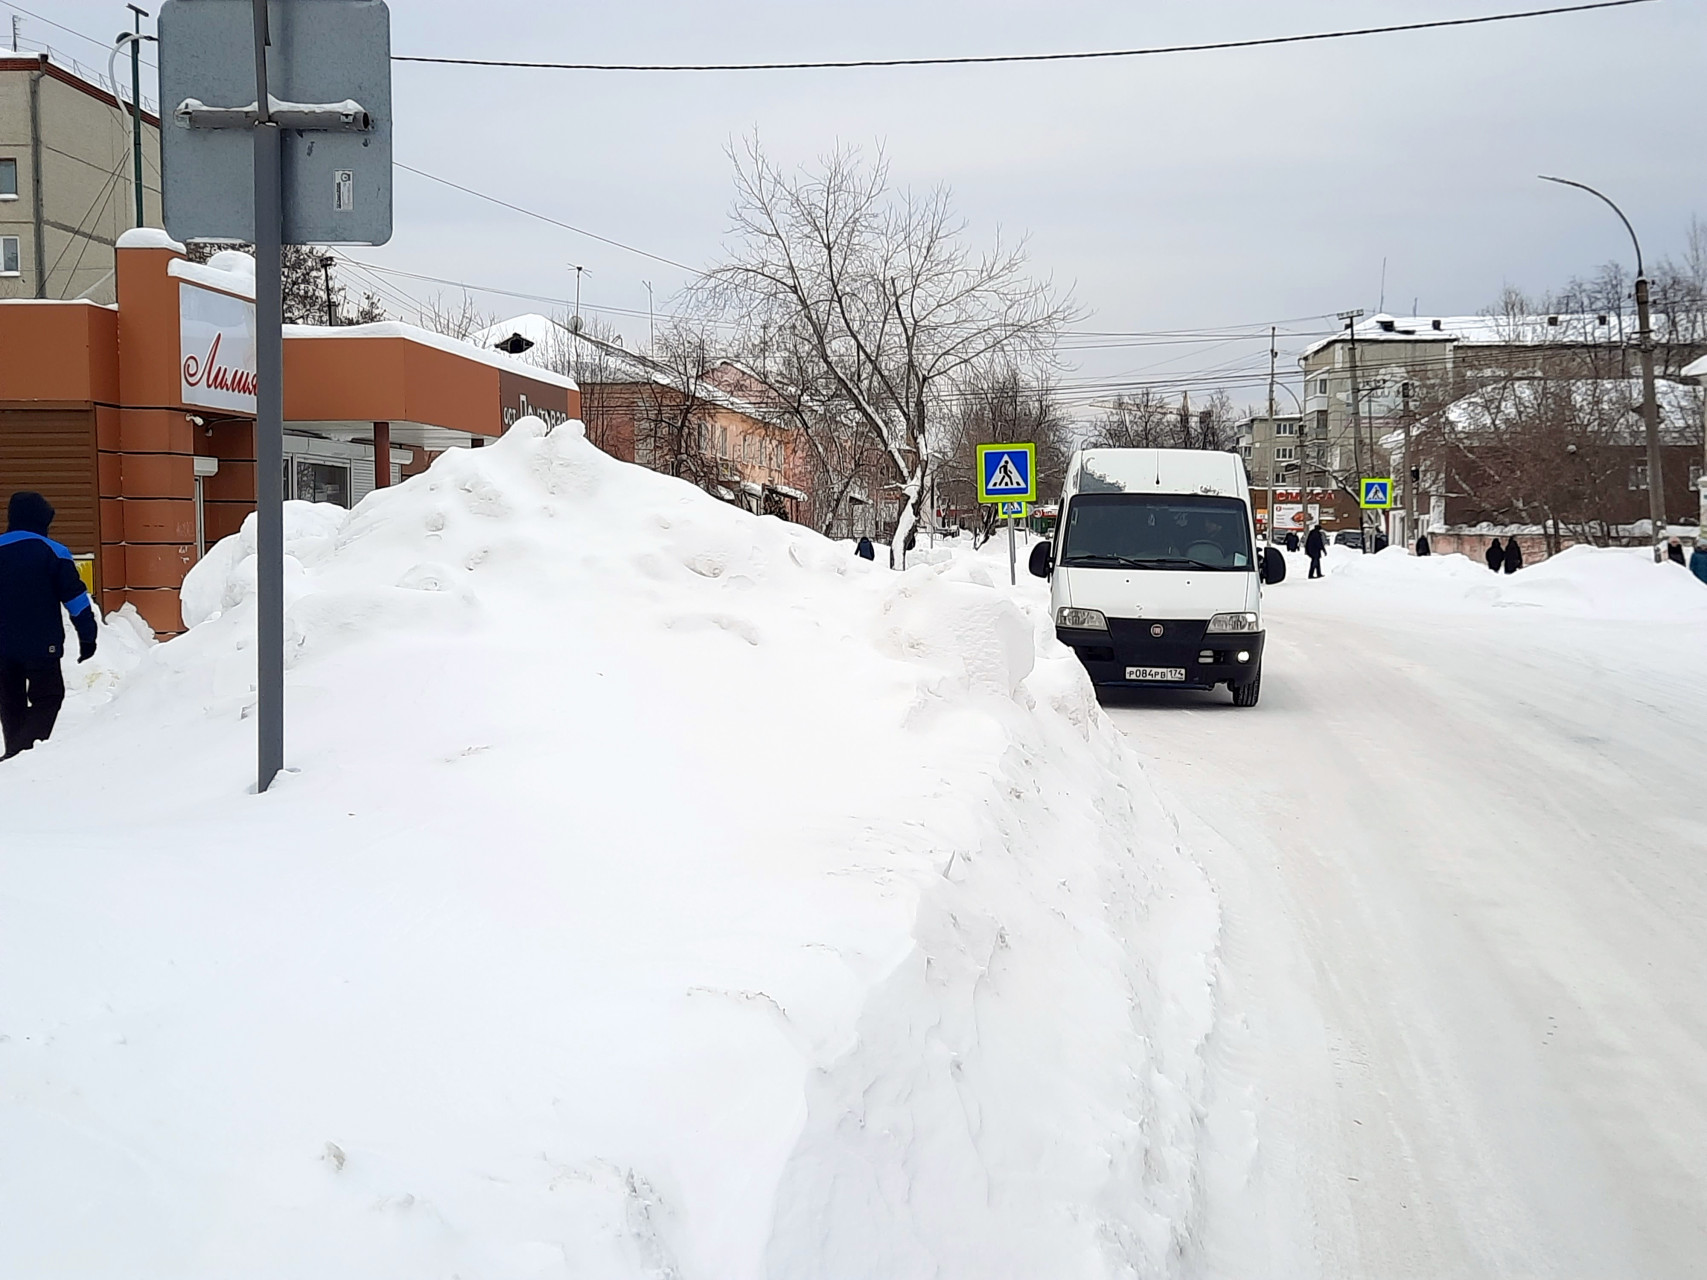 Остановка расчищена - хорошо, а то, что обзор водителям на оживленном повороте на Почтовой перекрыт - ну издержки сезона, снегопад виноват!